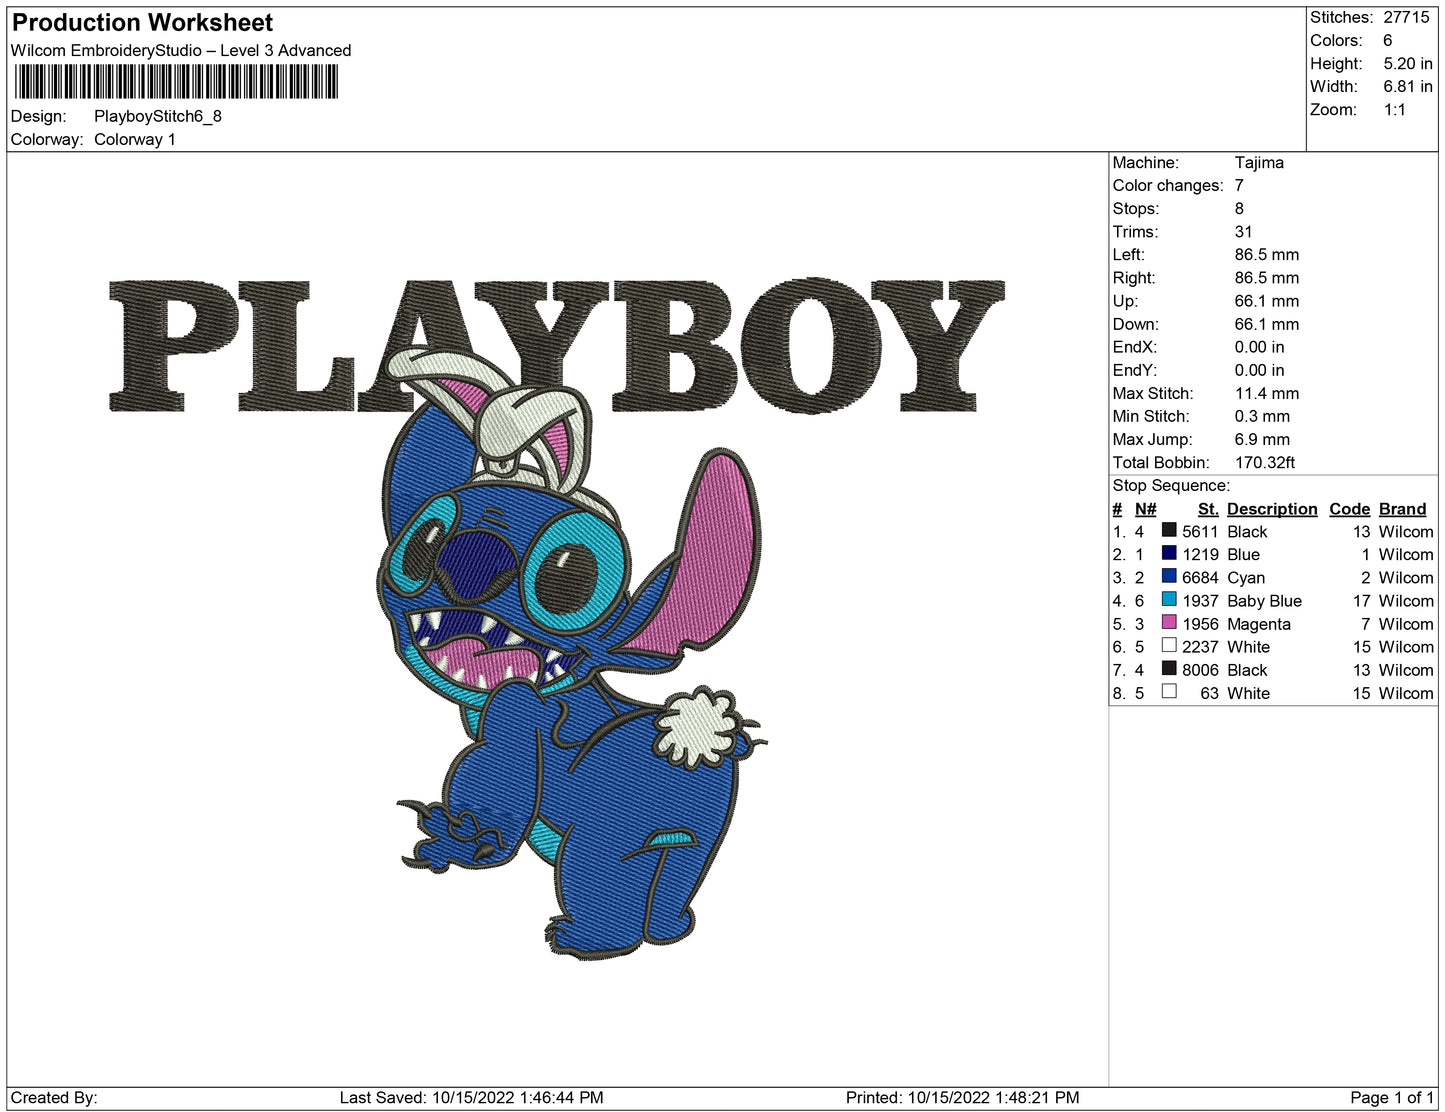 Playboy Stitch